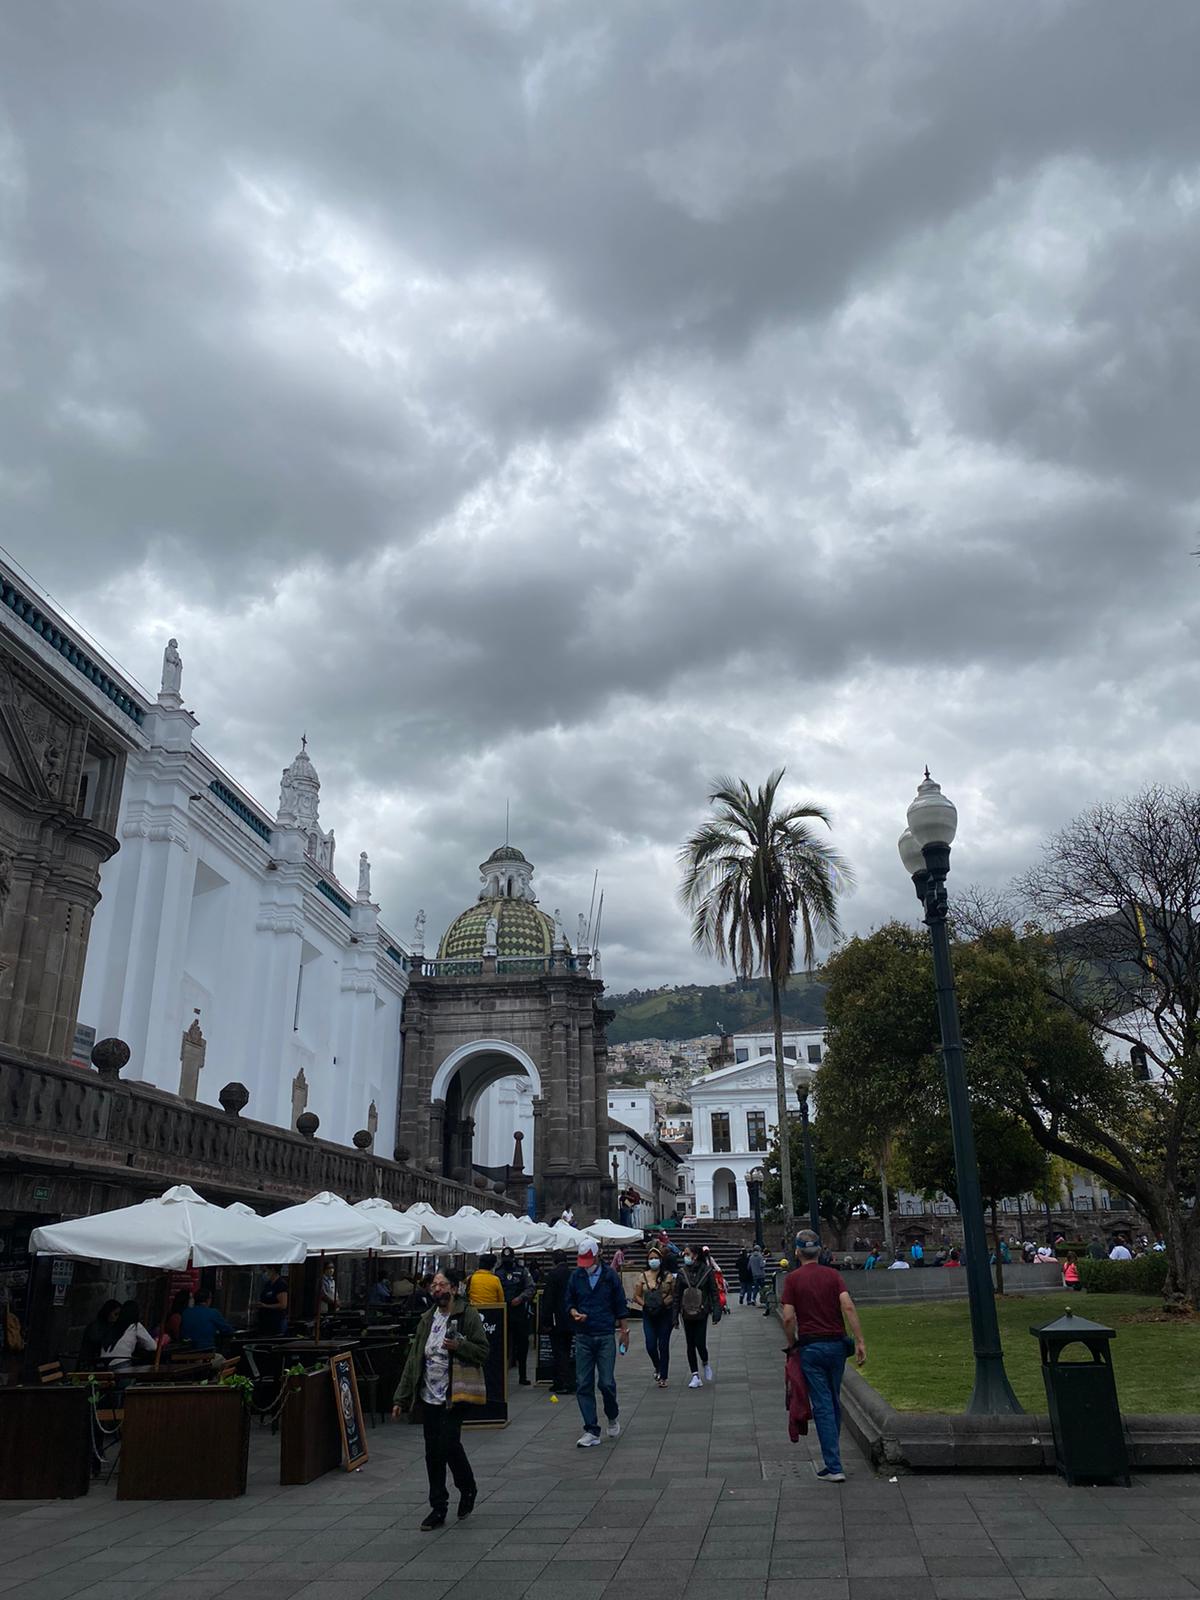 Catedral Metropolitana de Quito in historic centre